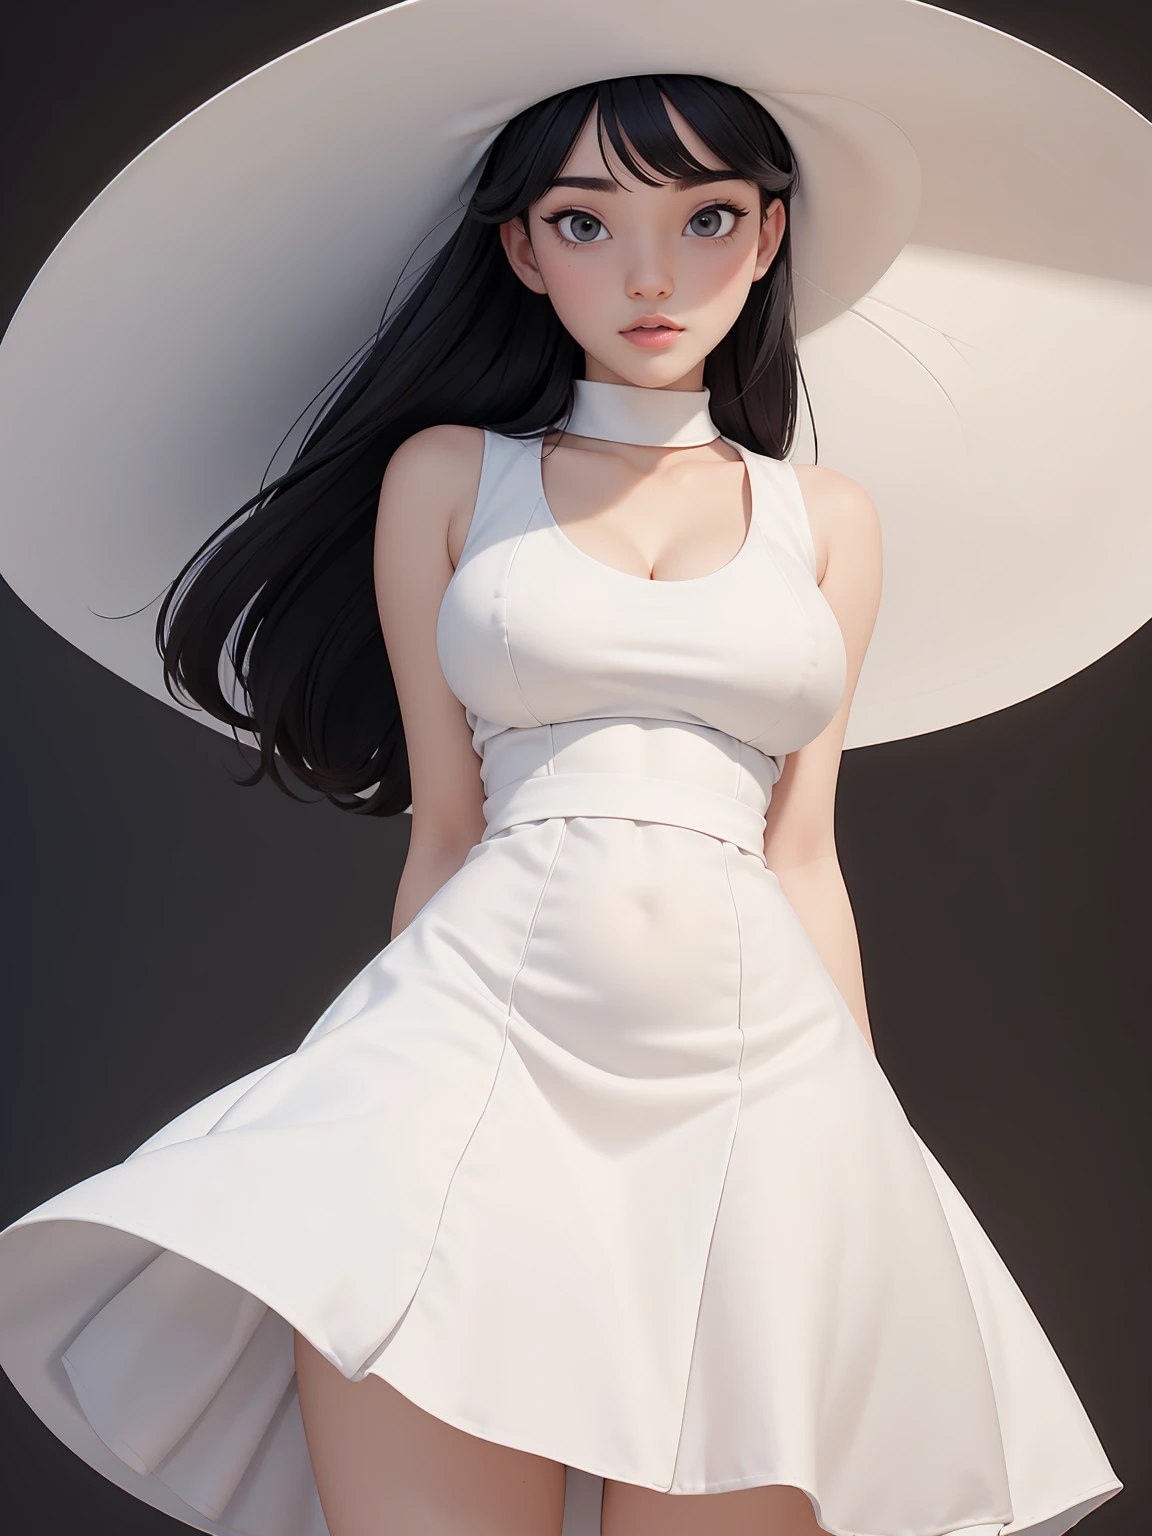 (beste Qualität, Meisterwerk, perfektes Gesicht) schwarzes Haar, 18 Jahre altes blasses Mädchen, große Oberweite, weißes Sommerkleid, Großer weißer Hut
